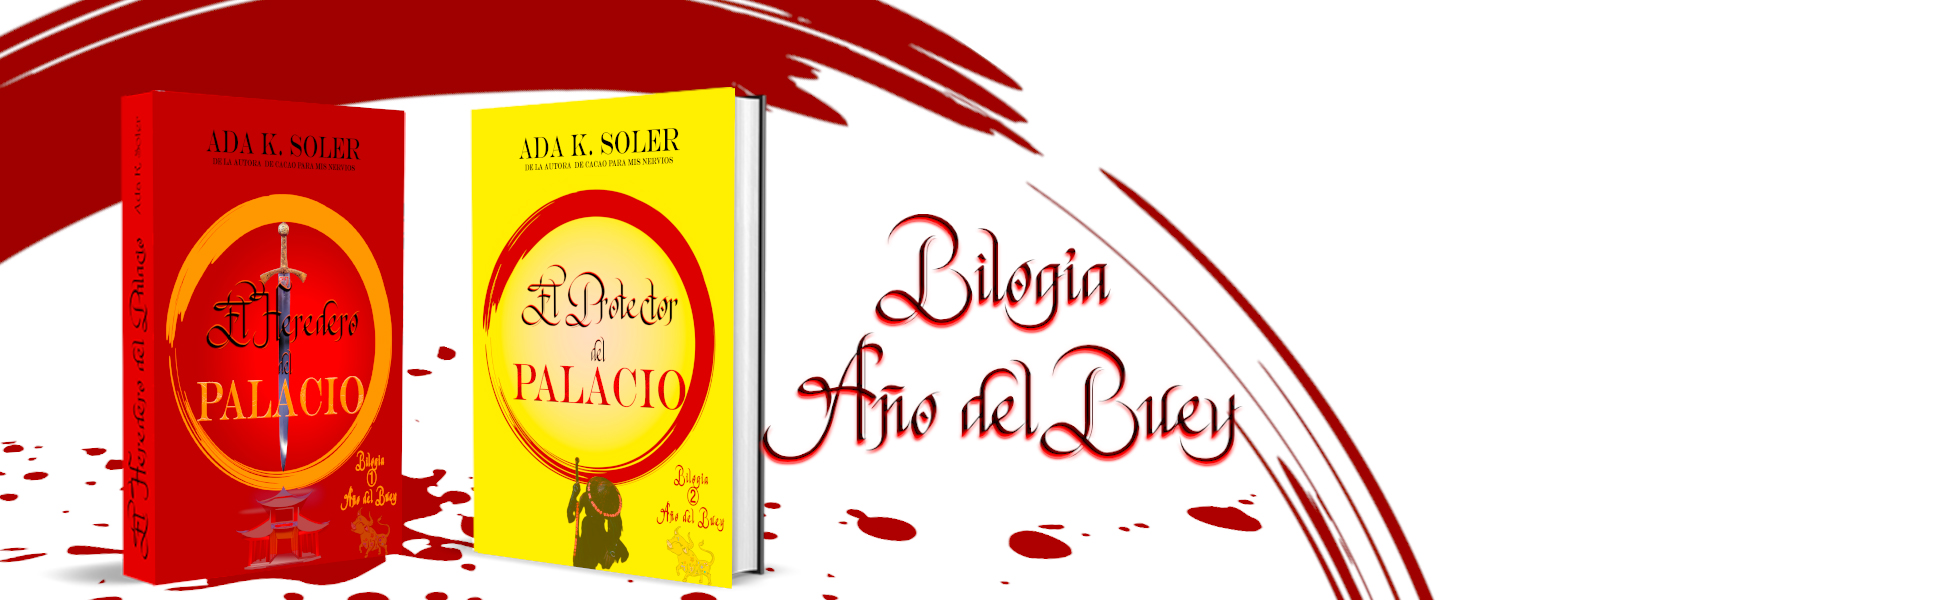 bilogia 'Ada K. Soler' Libros Libros recomendados Libros mas vendidos Libros a recomendar Generos literarios Libros juvenil